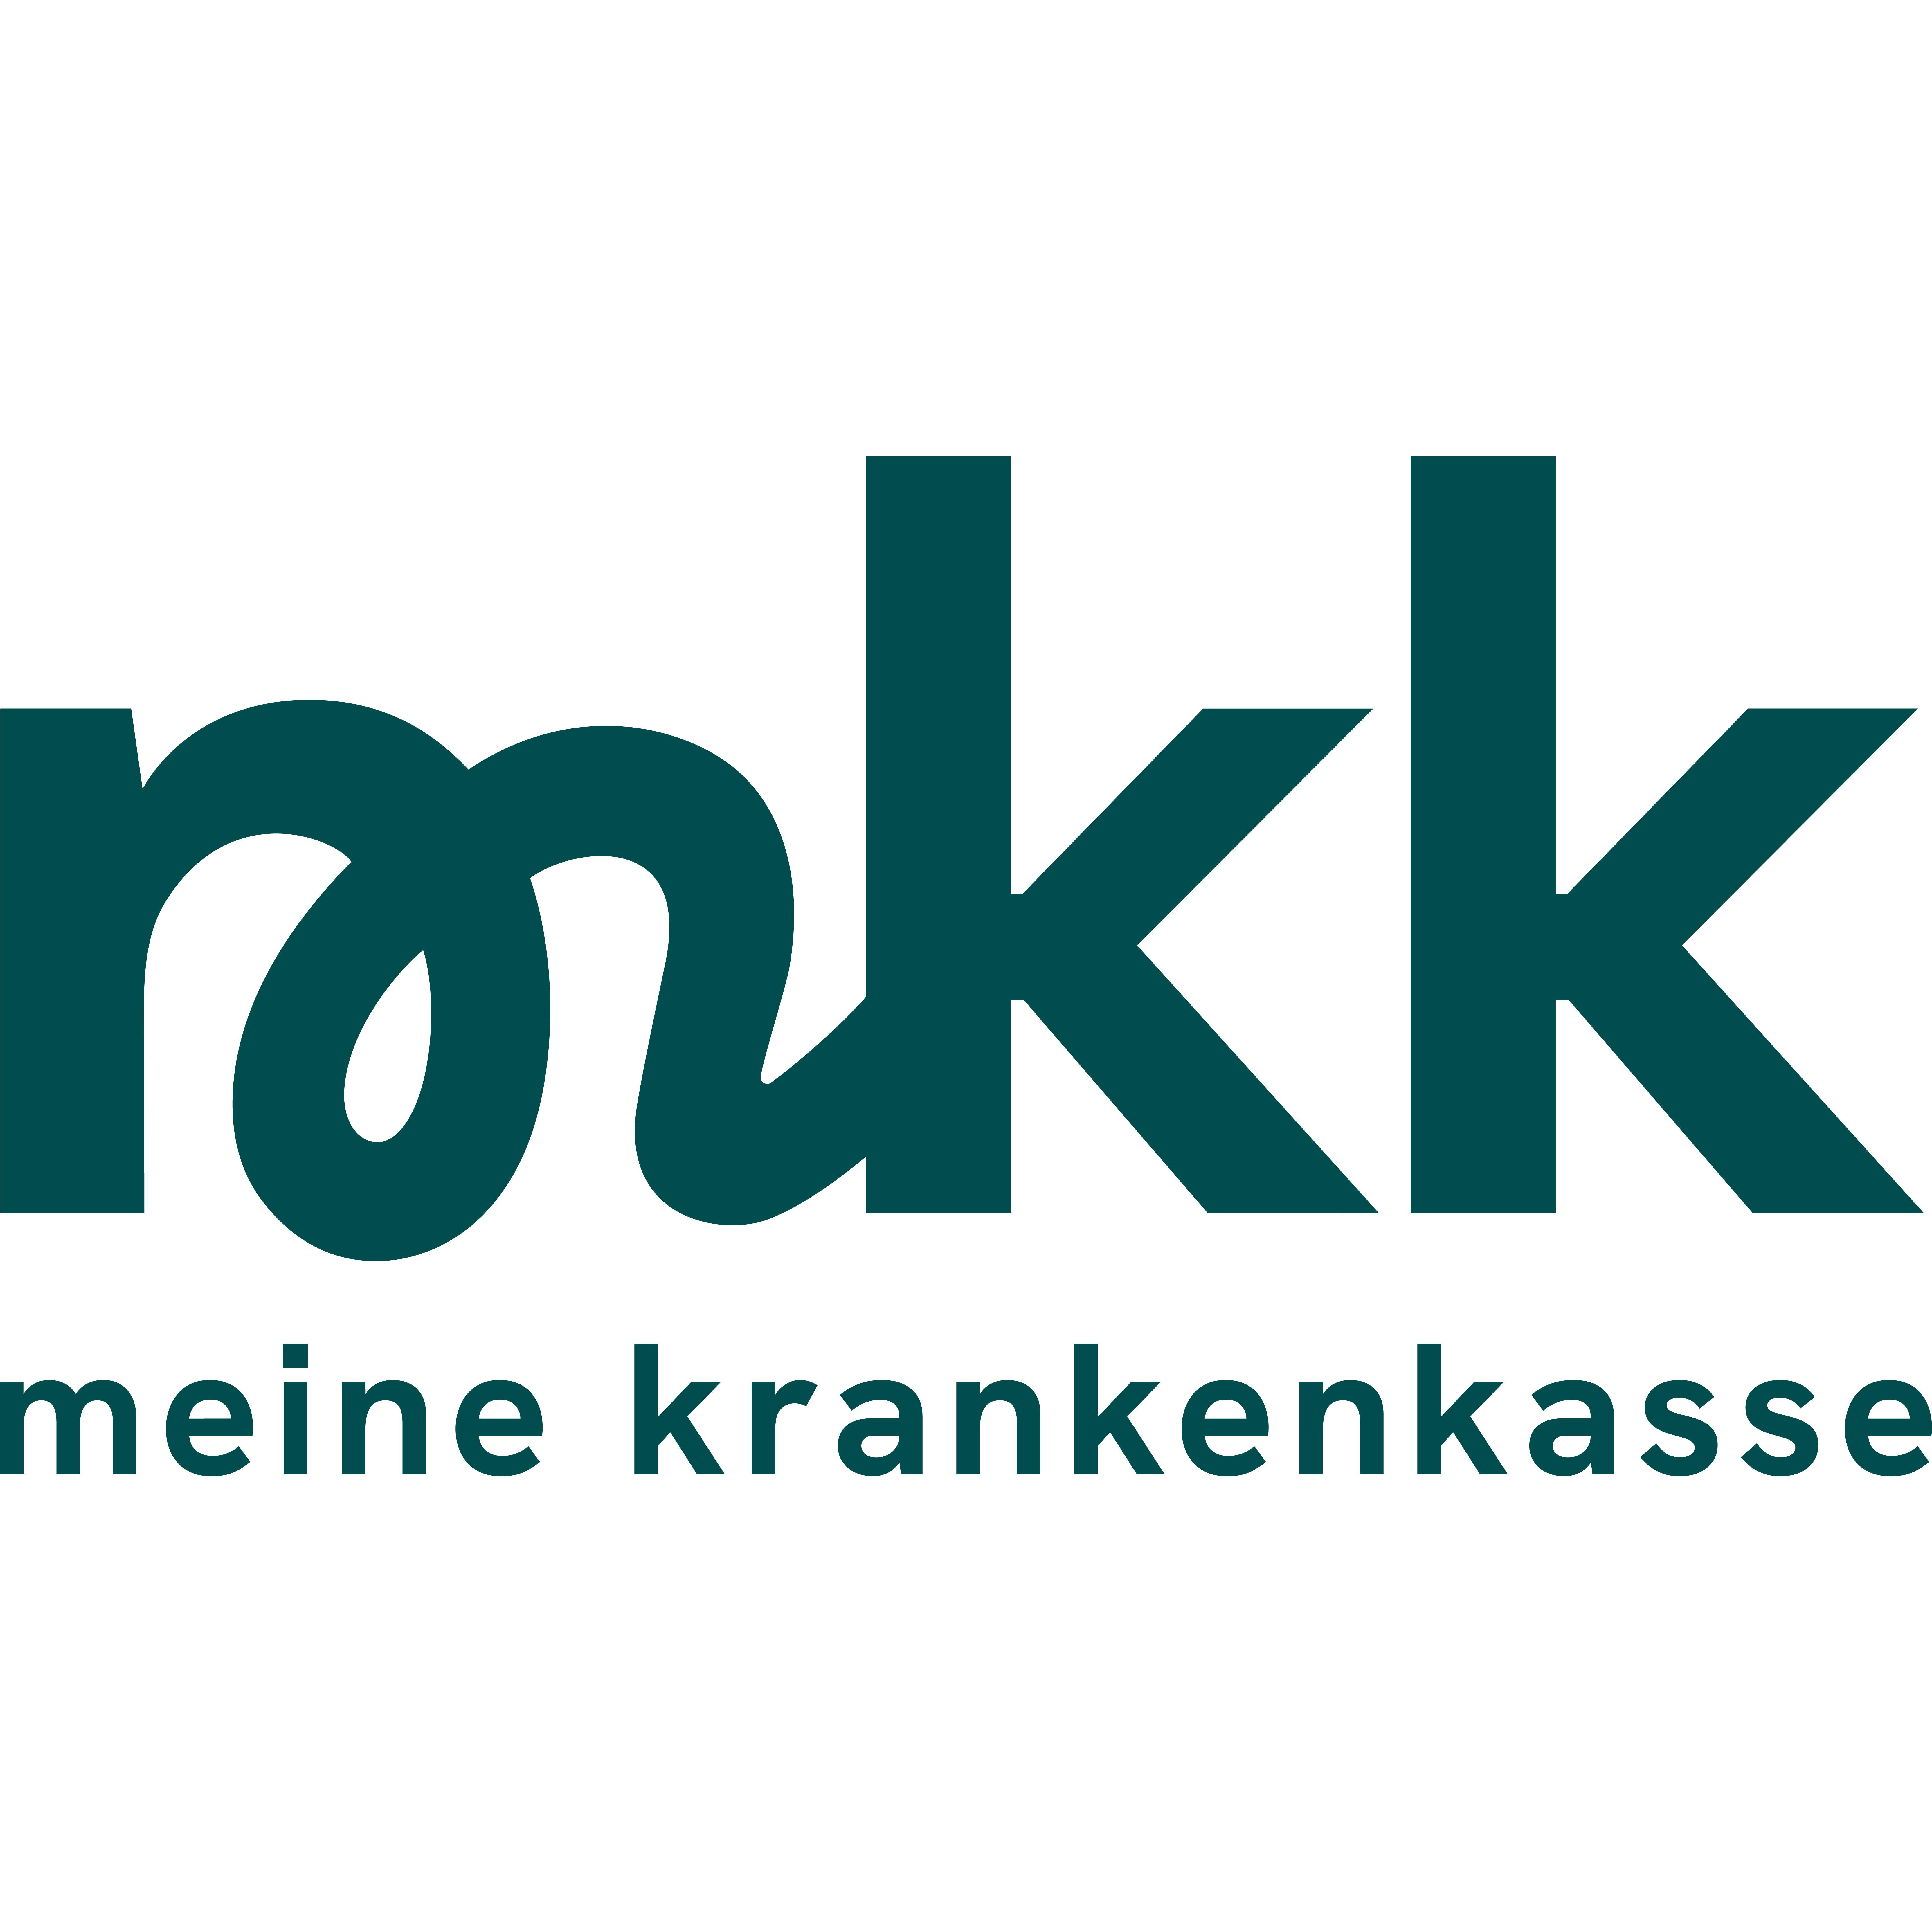 mkk - meine krankenkasse in Kelsterbach - Logo